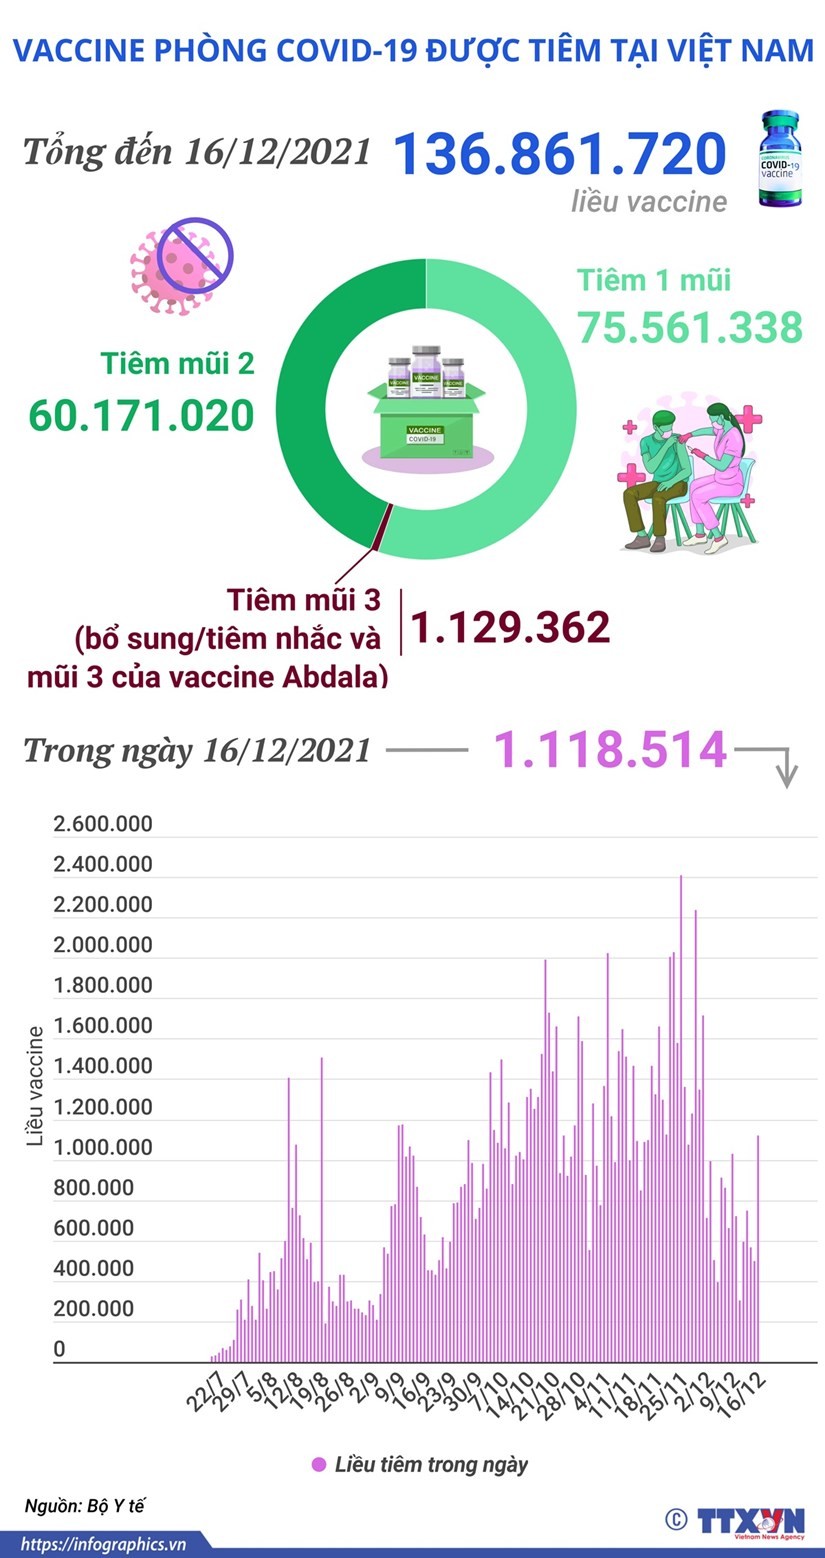 Hơn 136,8 triệu liều vaccine phòng Covid-19 đã được tiêm tại Việt Nam